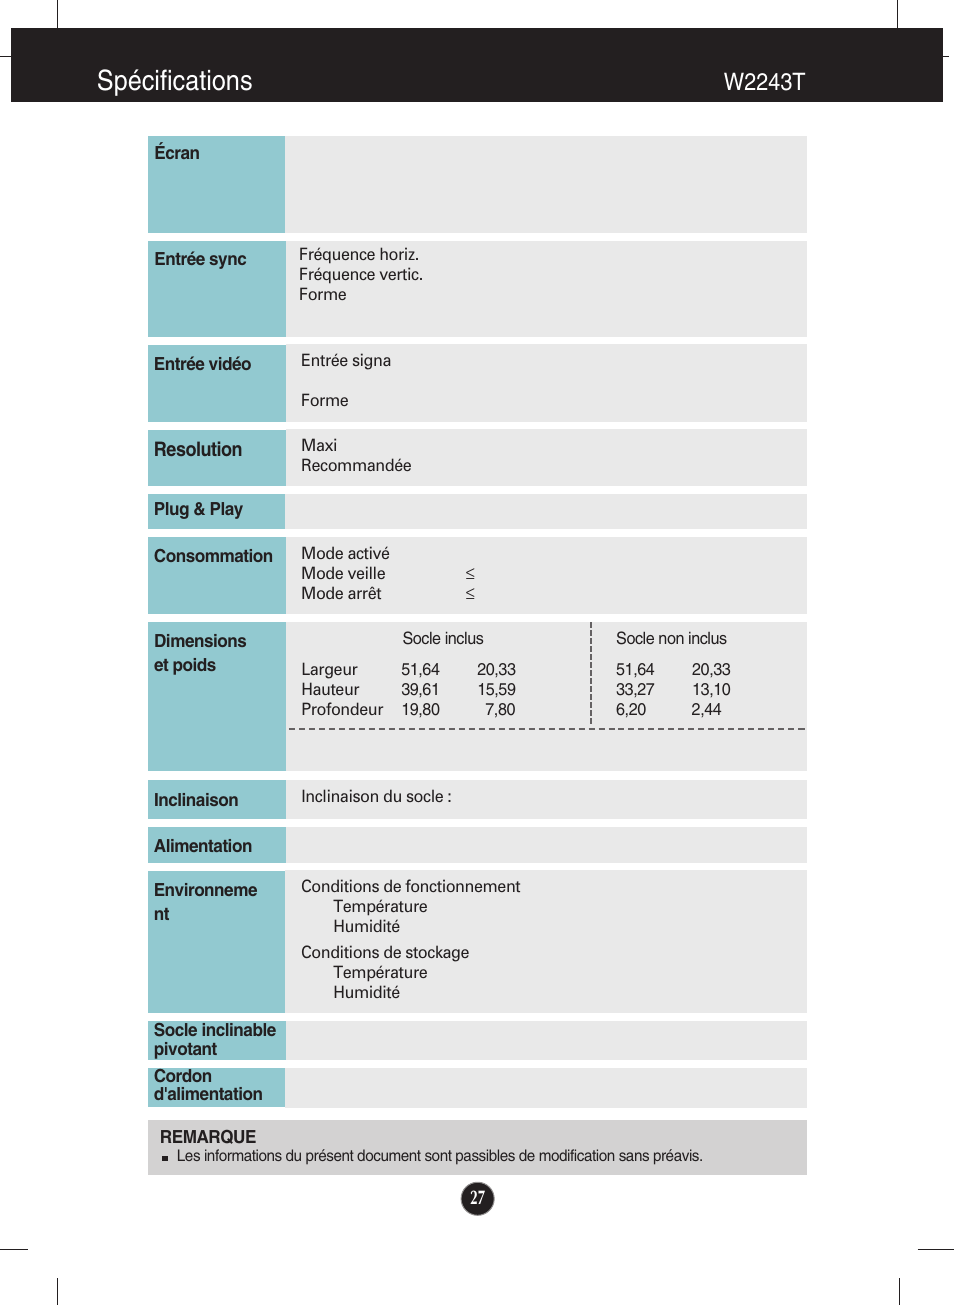 W2243t, Spécifications | LG W2243S-PF Manuel d'utilisation | Page 28 / 34